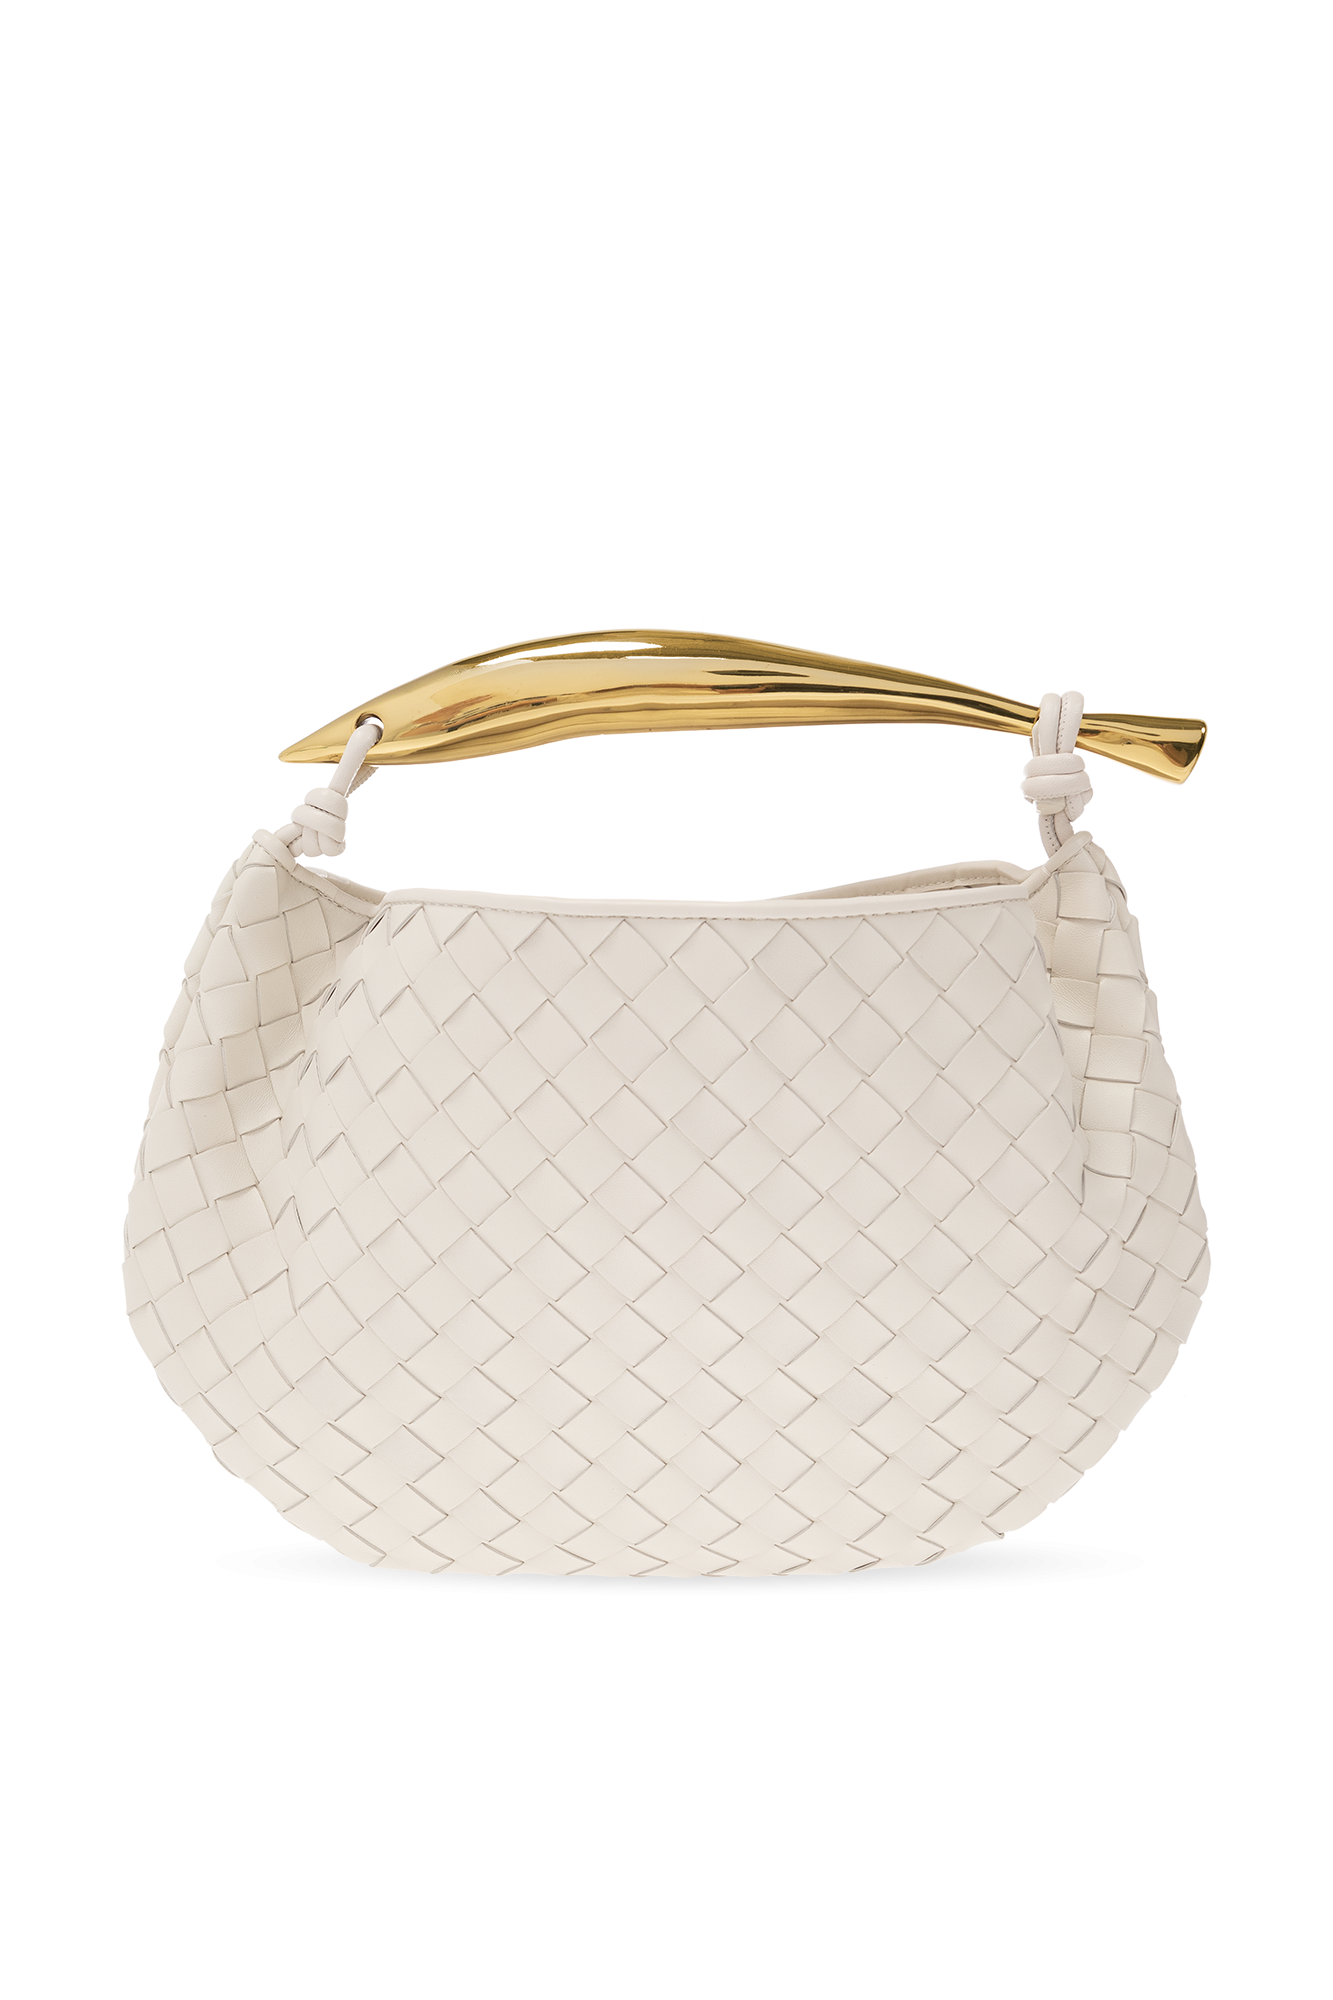 Bottega Veneta ‘Sardine’ handbag